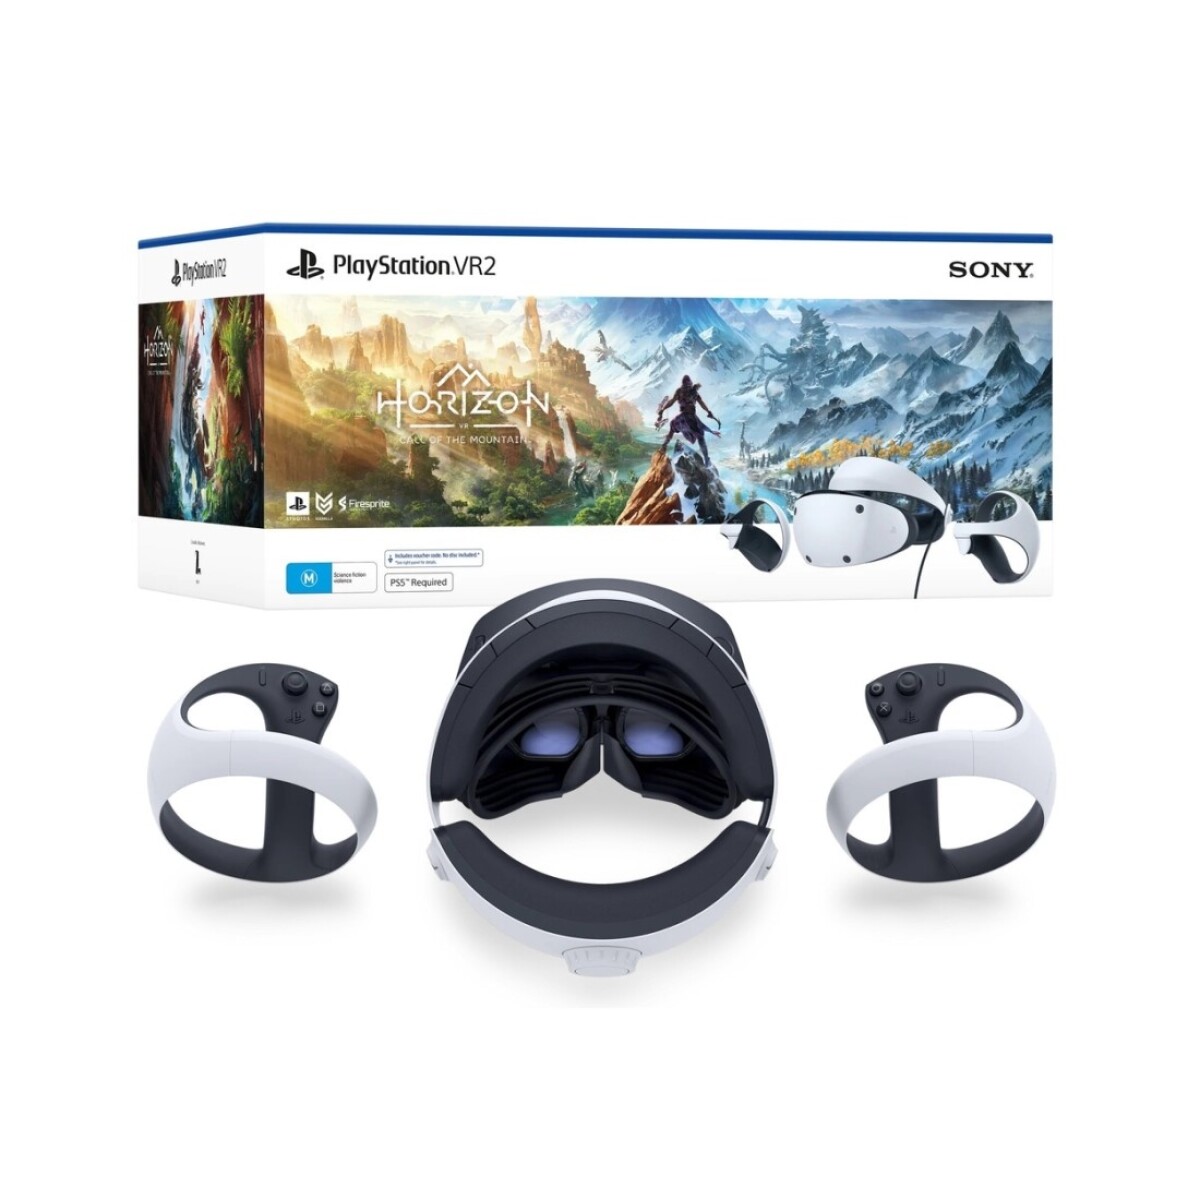 Bundle Realidad Virtual PlayStation VR 2 Horizon Call of the Mountain Edition para PS5 - Blanco 